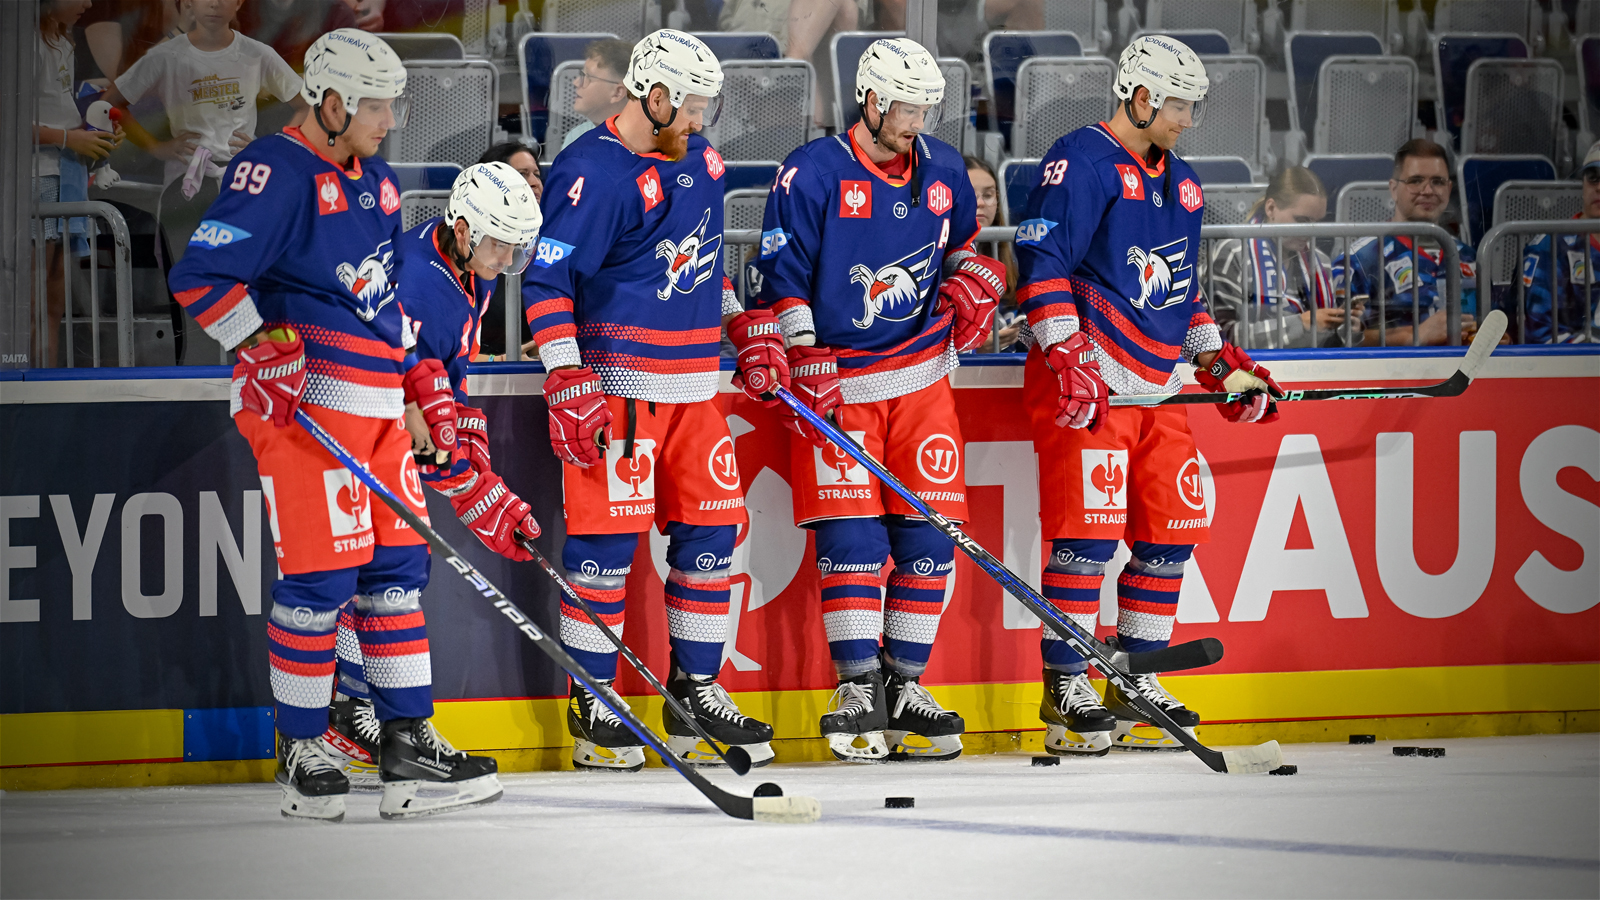 Panocha geht in die QMJHL – Adler Mannheim holen finnischen Angreifer  Markus Hännikäinen aus Schweden zurück - Eishockey NEWS